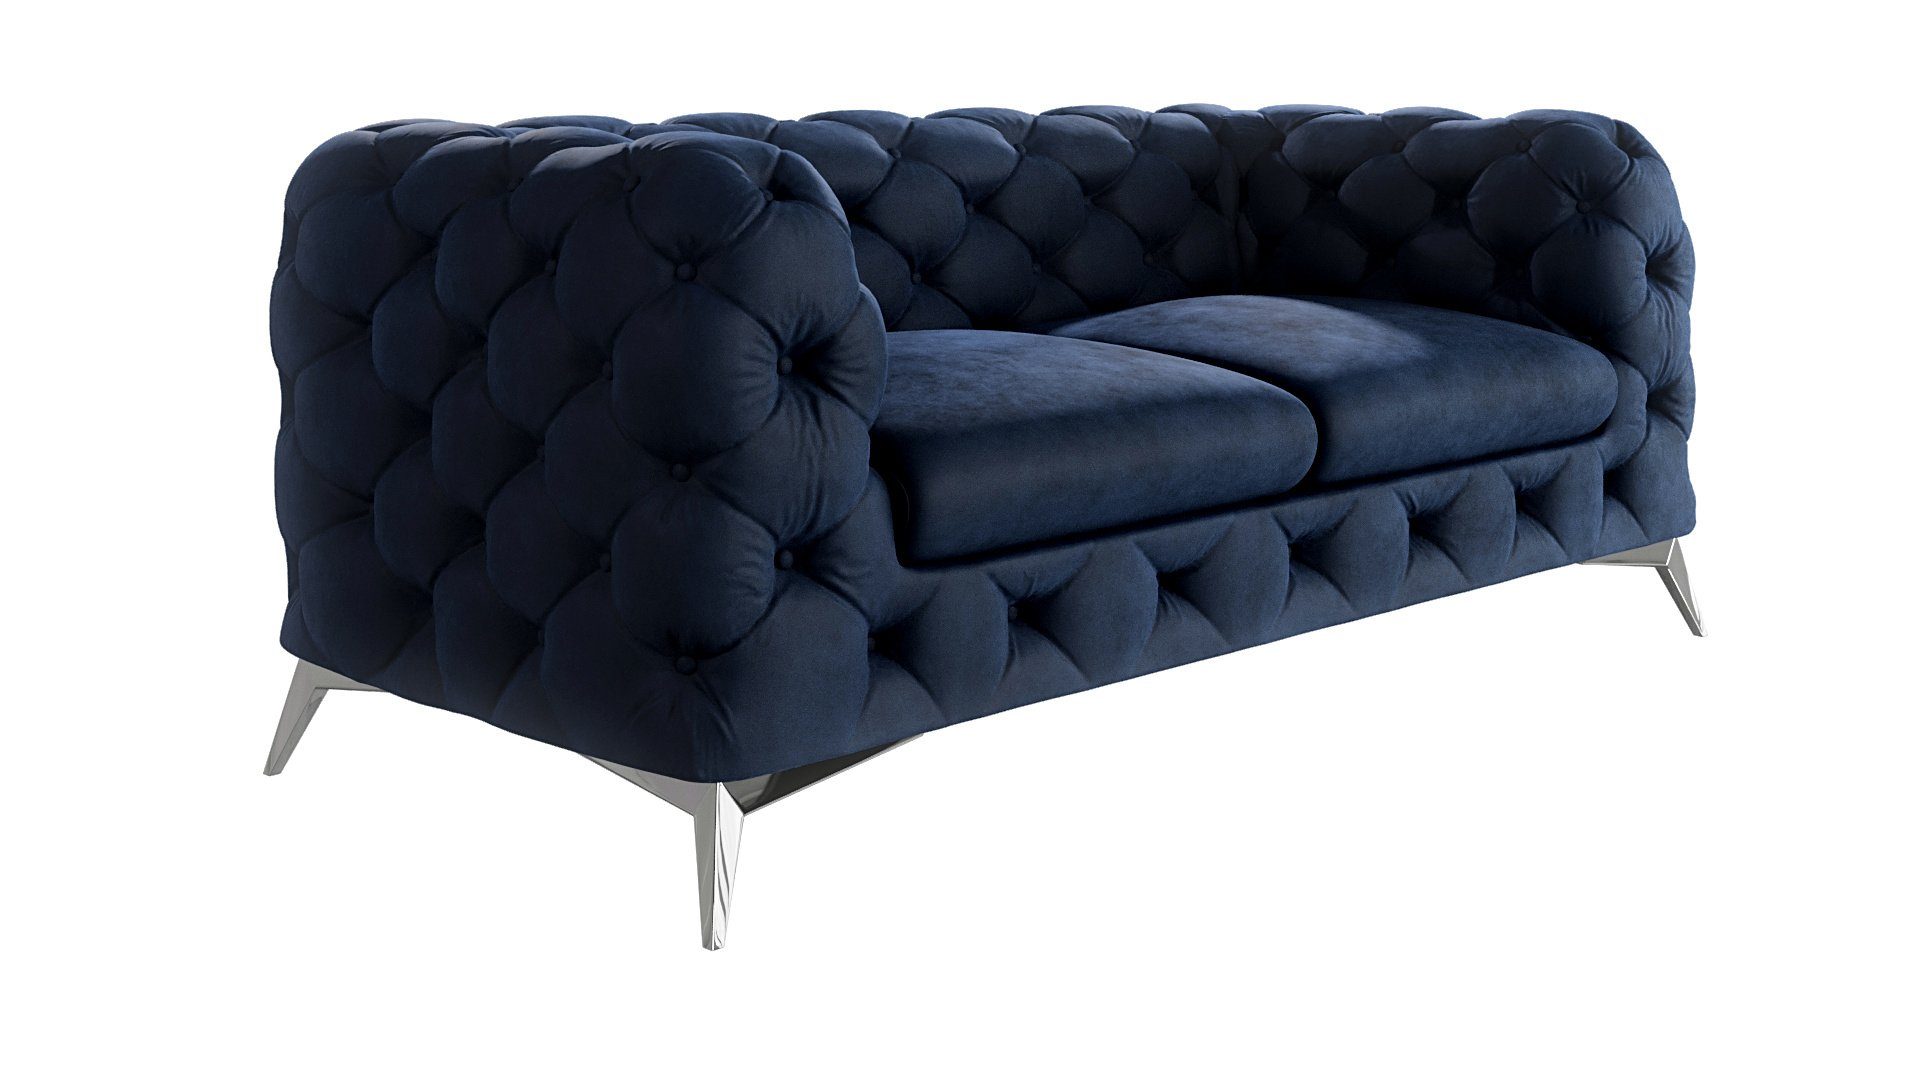 Füßen, Kalina Sofa Marineblau Silber Wellenfederung 2-Sitzer mit S-Style Metall Chesterfield Möbel mit